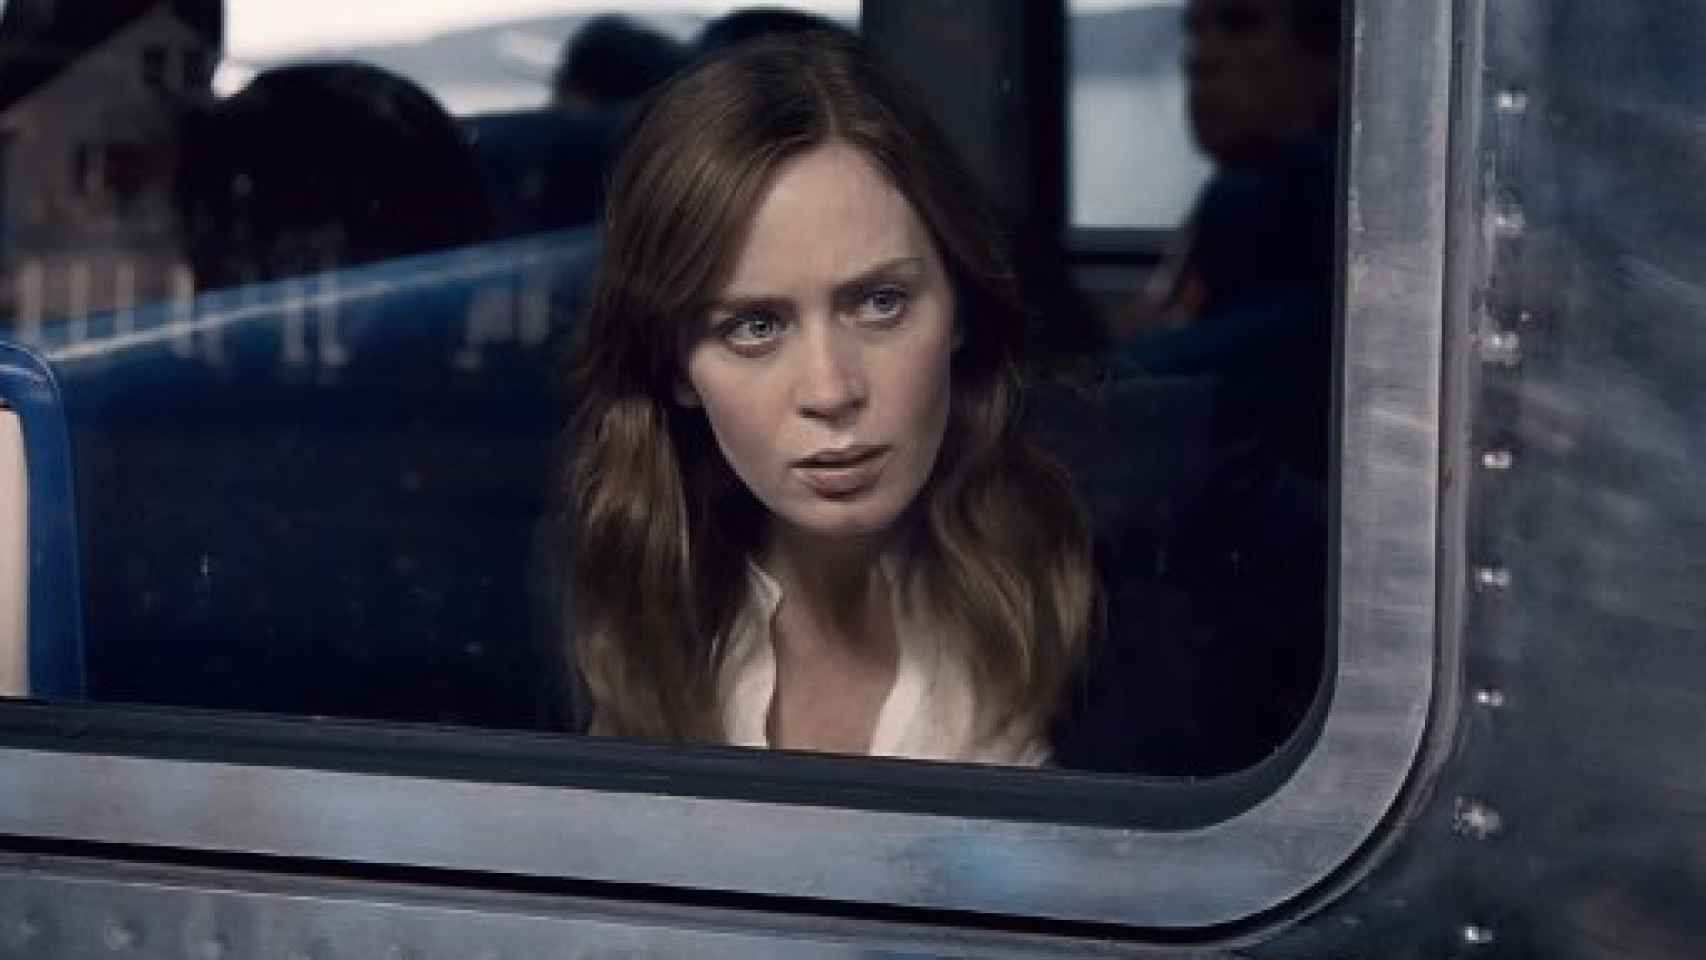 Image: Llega a España el tráiler de La chica del tren